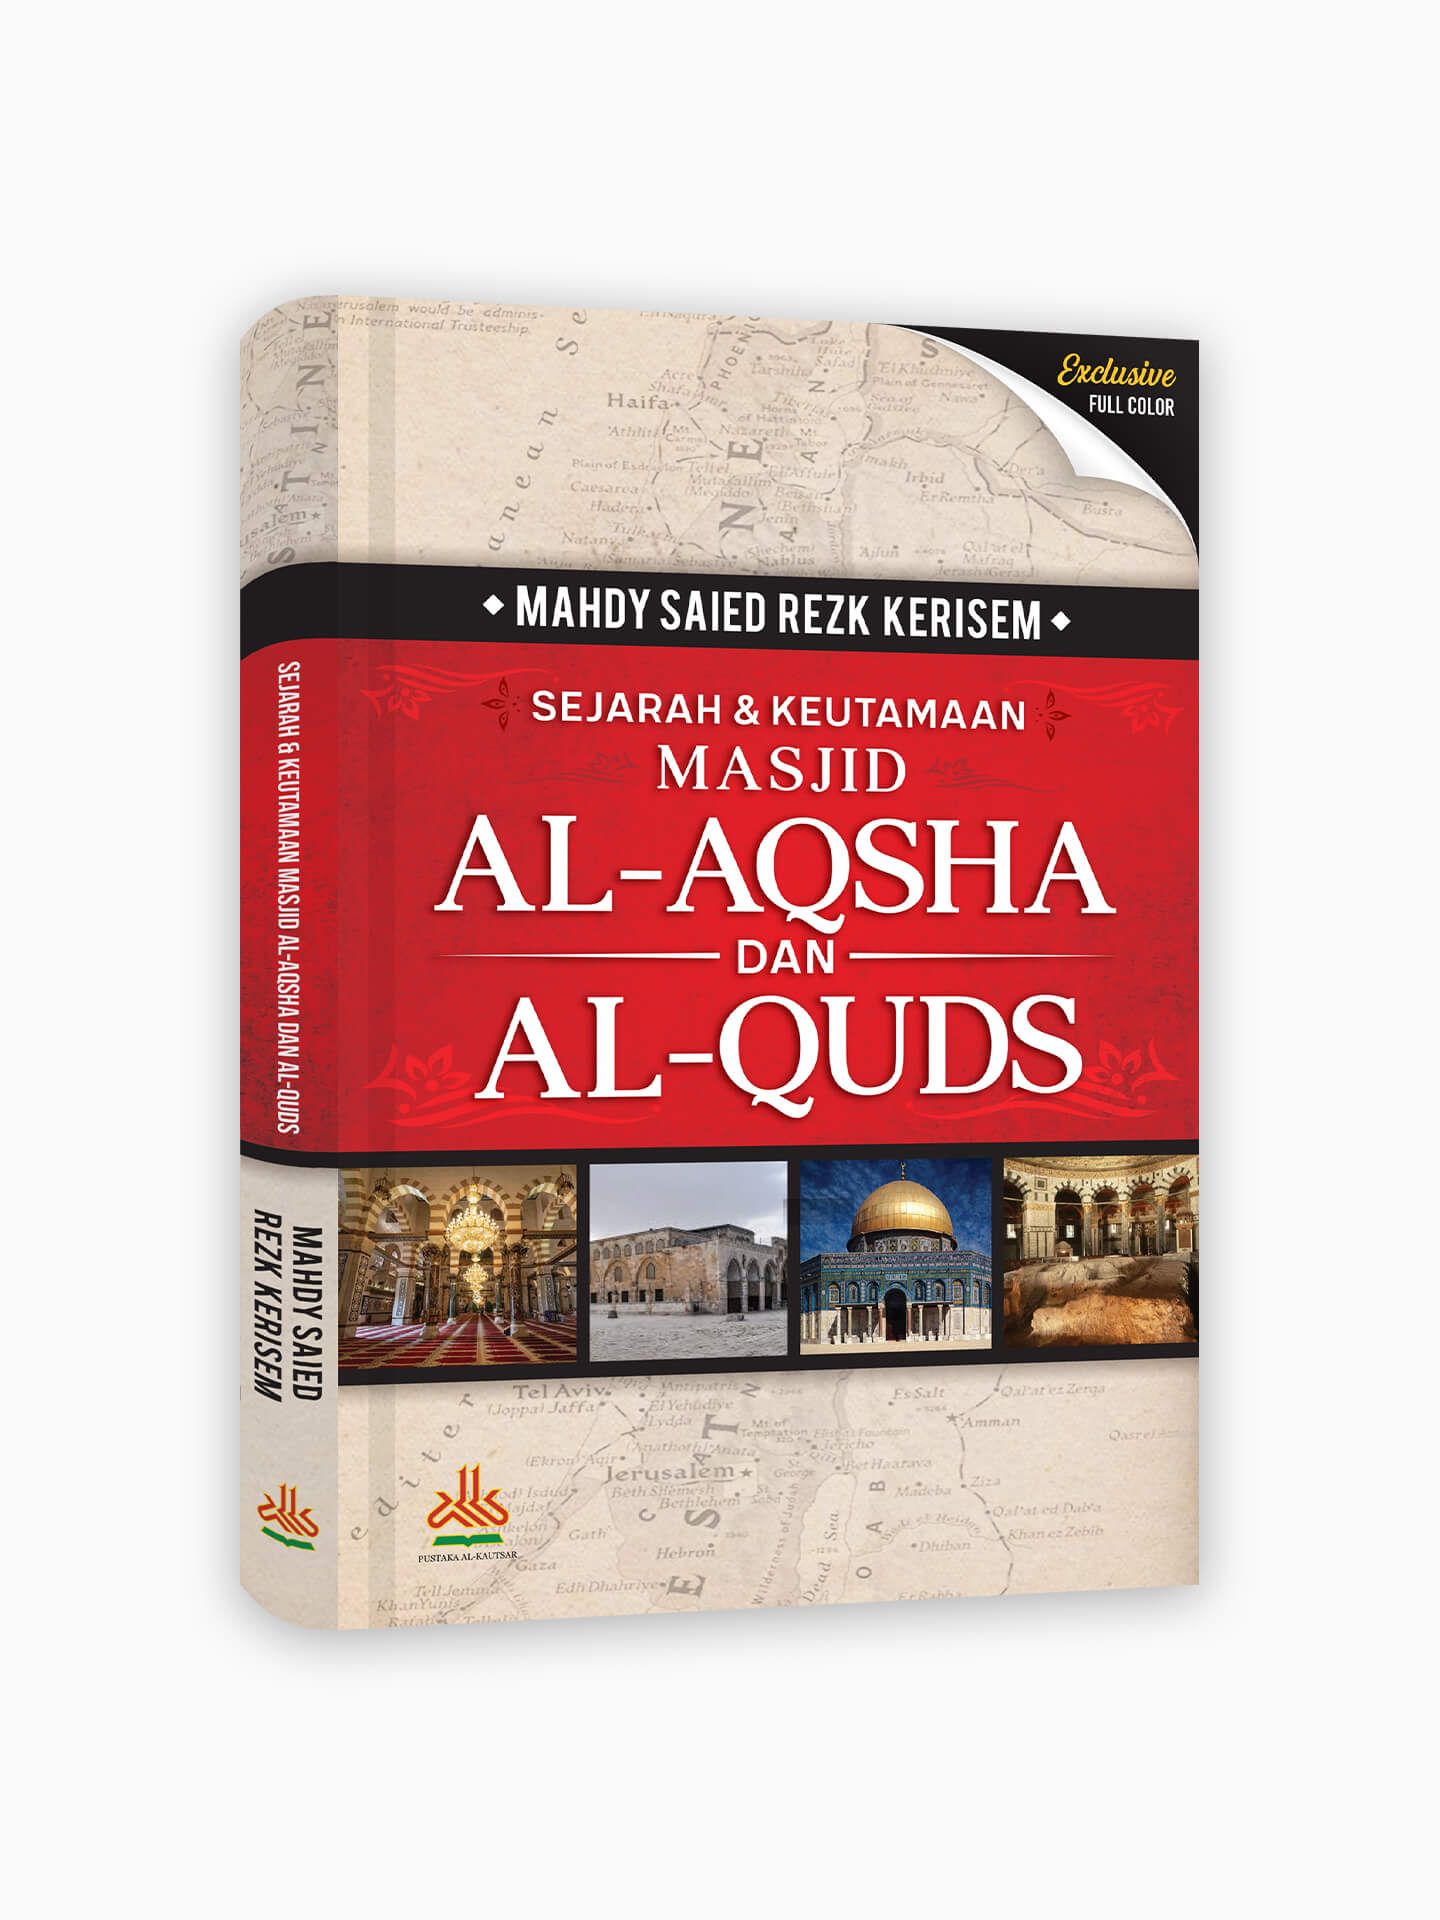 Sejarah & Keutamaan Masjid Al-Aqsha dan Al-Quds